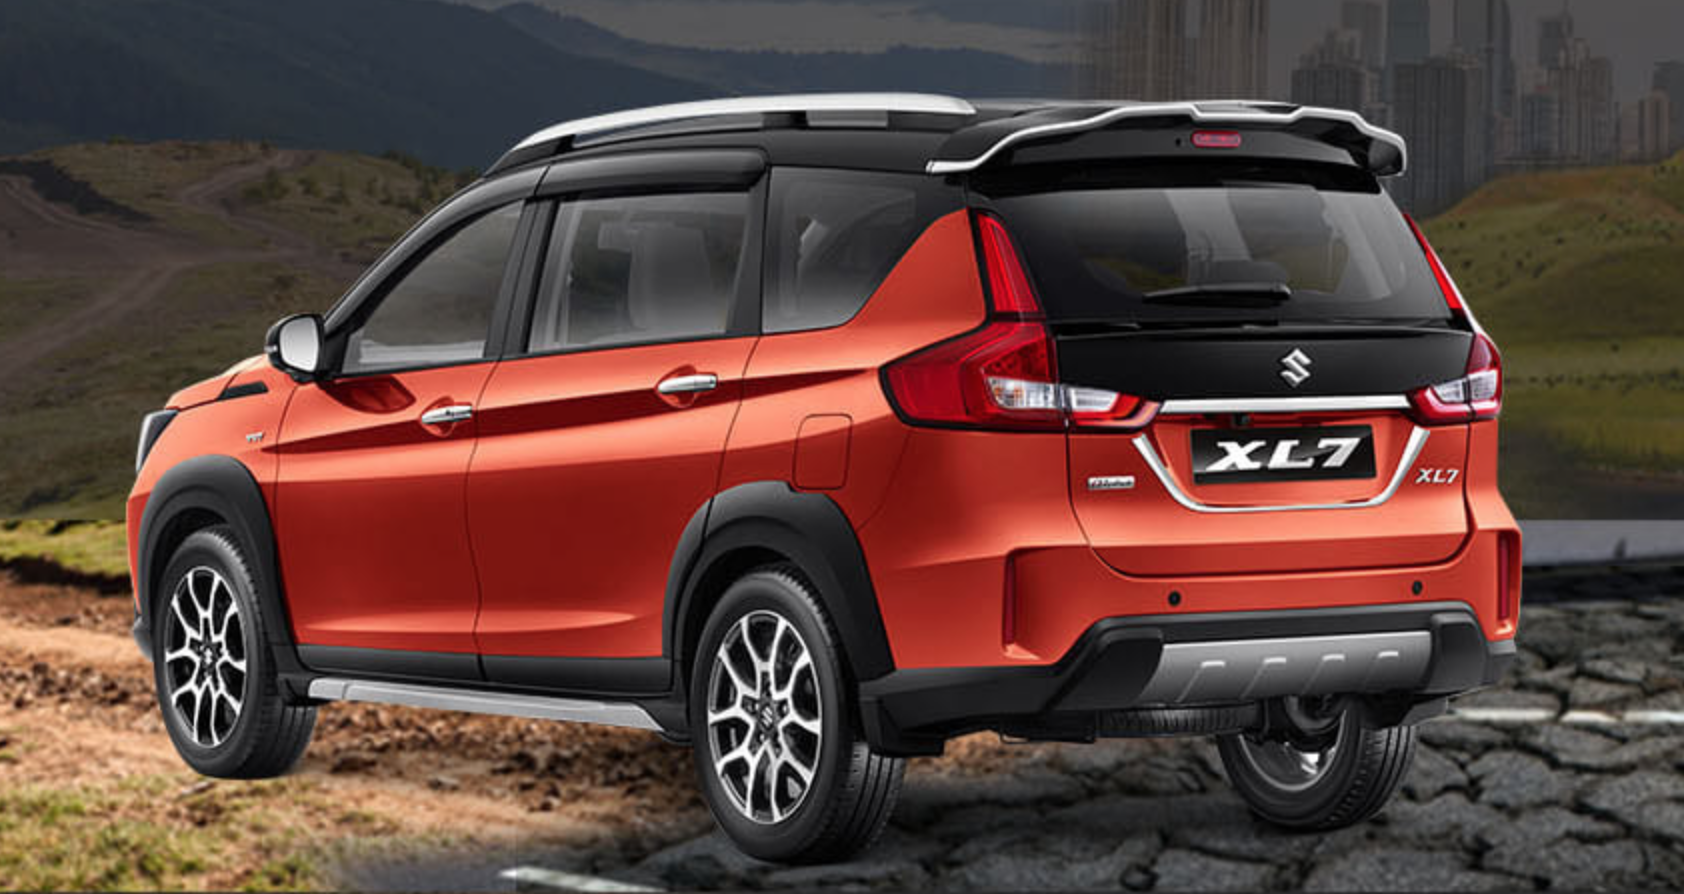 Hé lộ trang bị trên Suzuki XL7 sắp bán tại Việt Nam: Thêm tính năng nhiều  người dùng Ertiga ao ước, cạnh tranh Mitsubishi Xpander